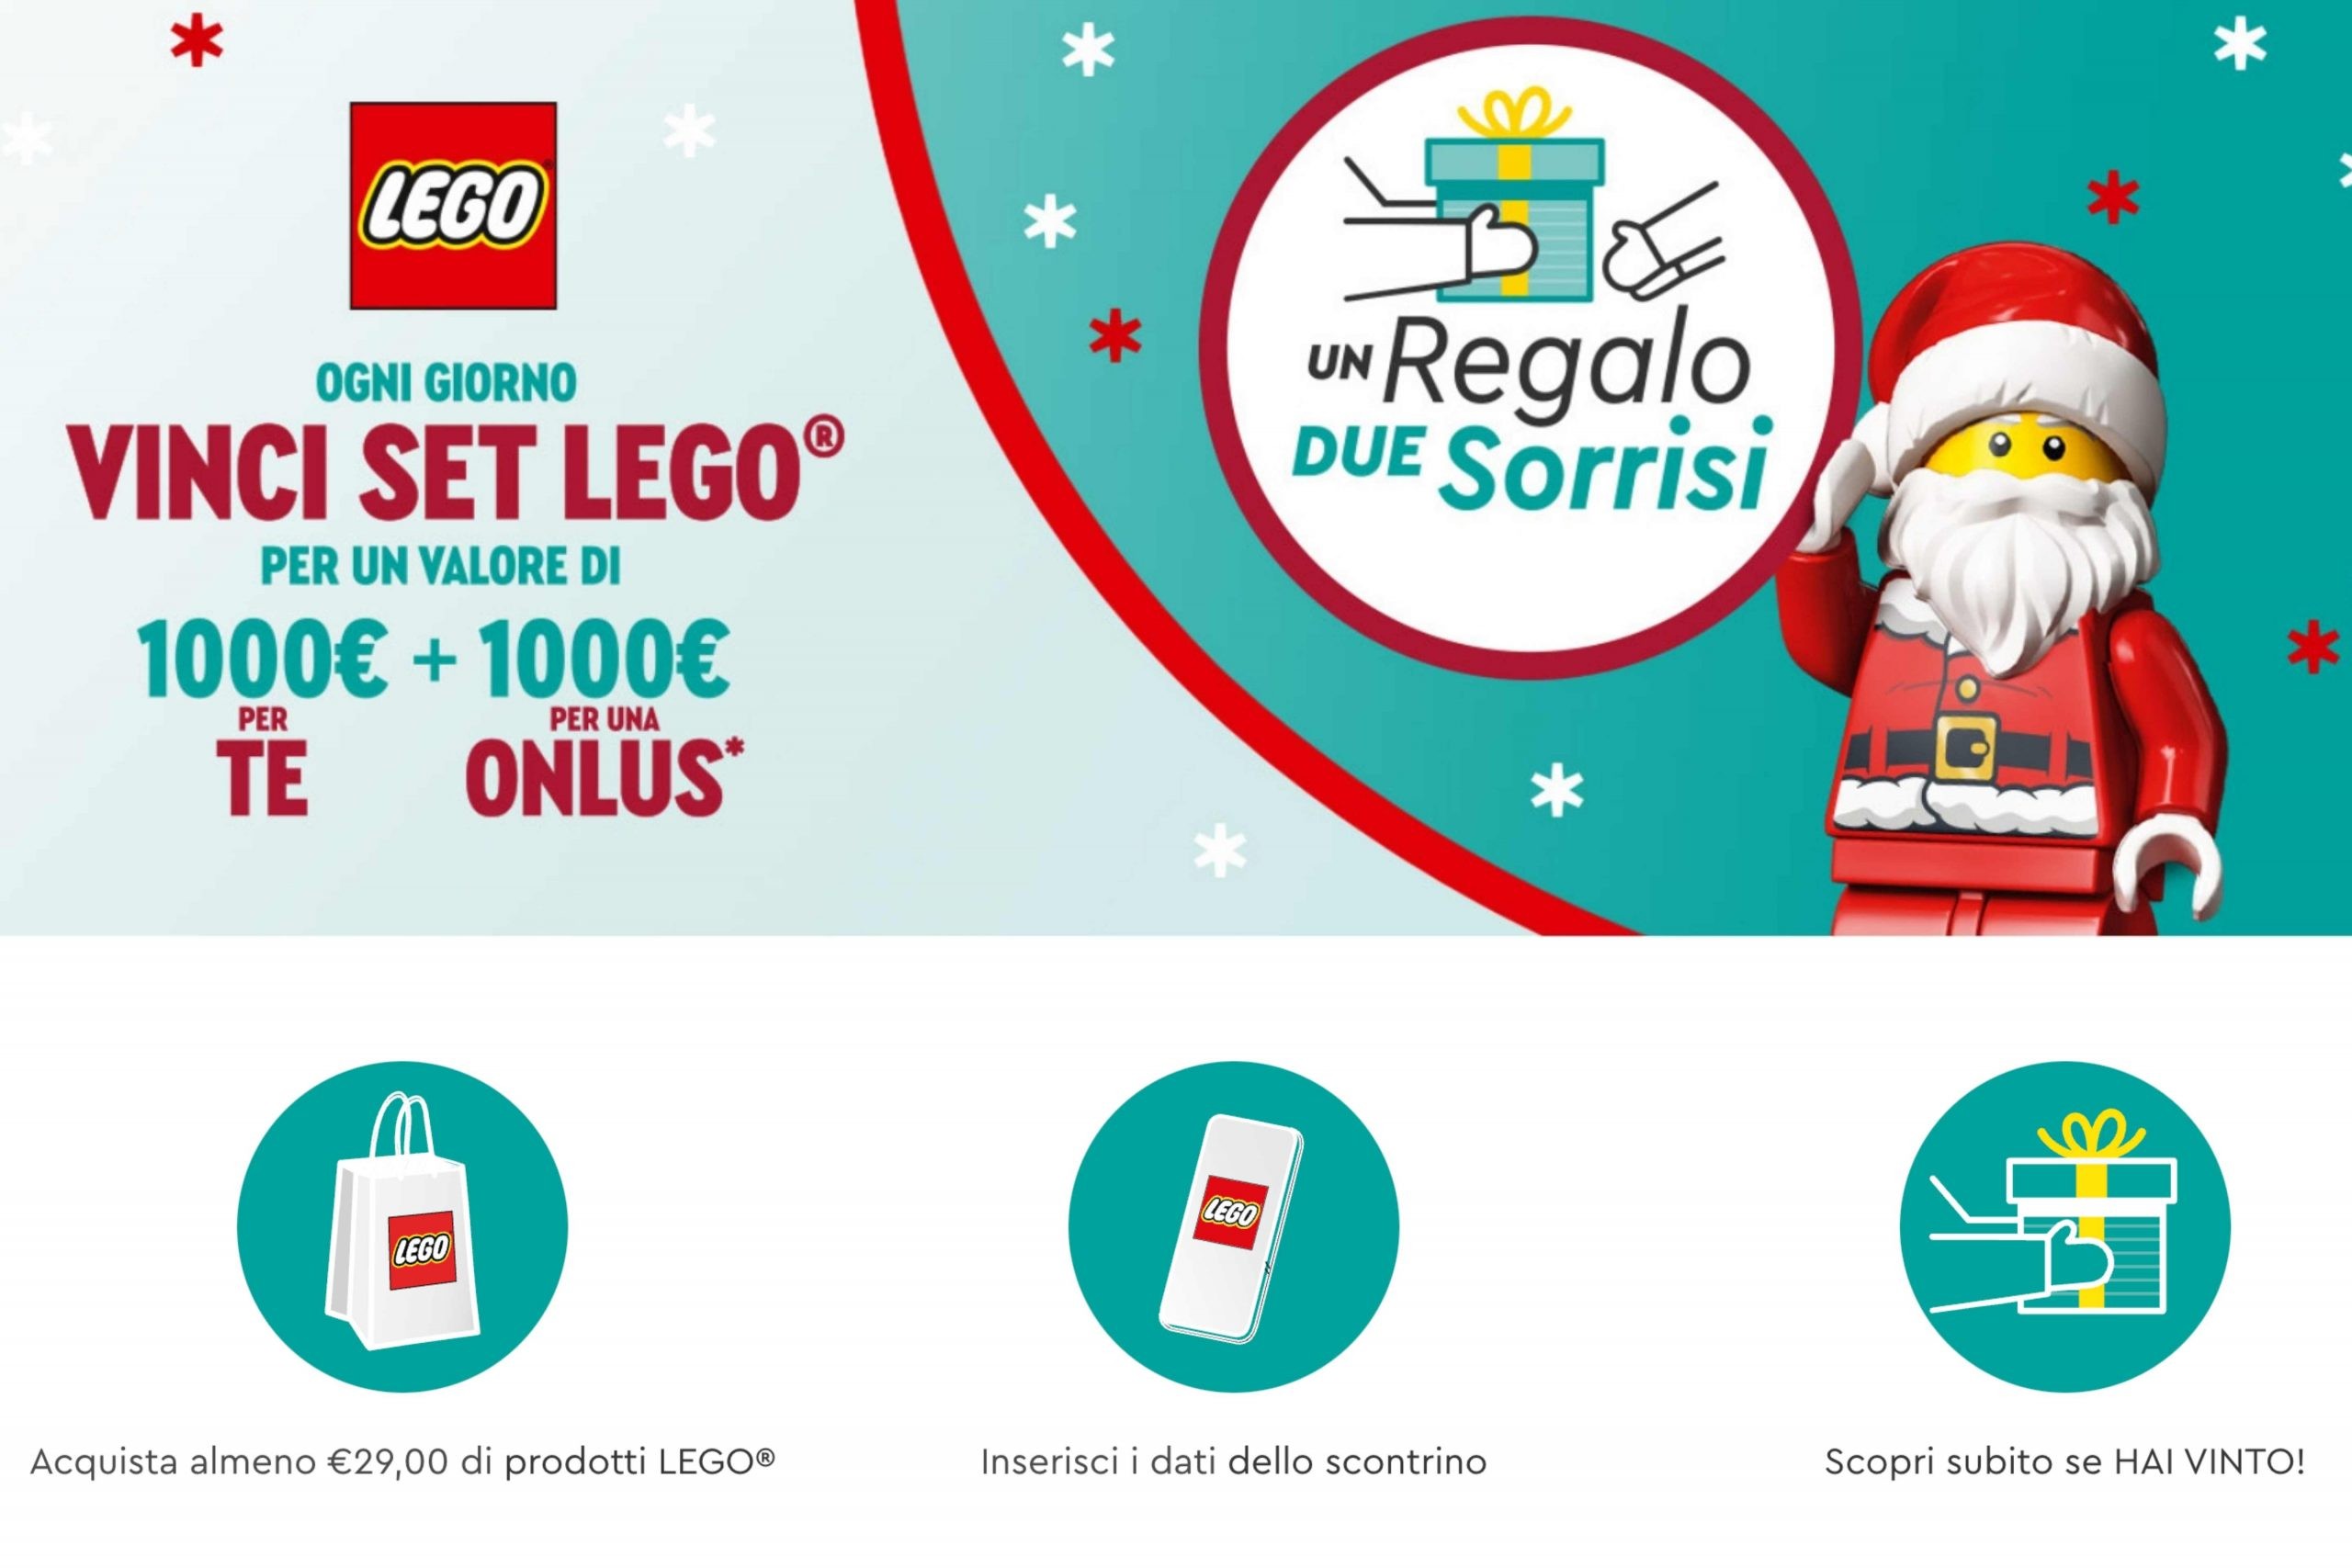 Concorso “Un regalo due sorrisi”: come vincere una fornitura di set LEGO da 1000€ per te + altri 1000€ per una Onlus a tua scelta